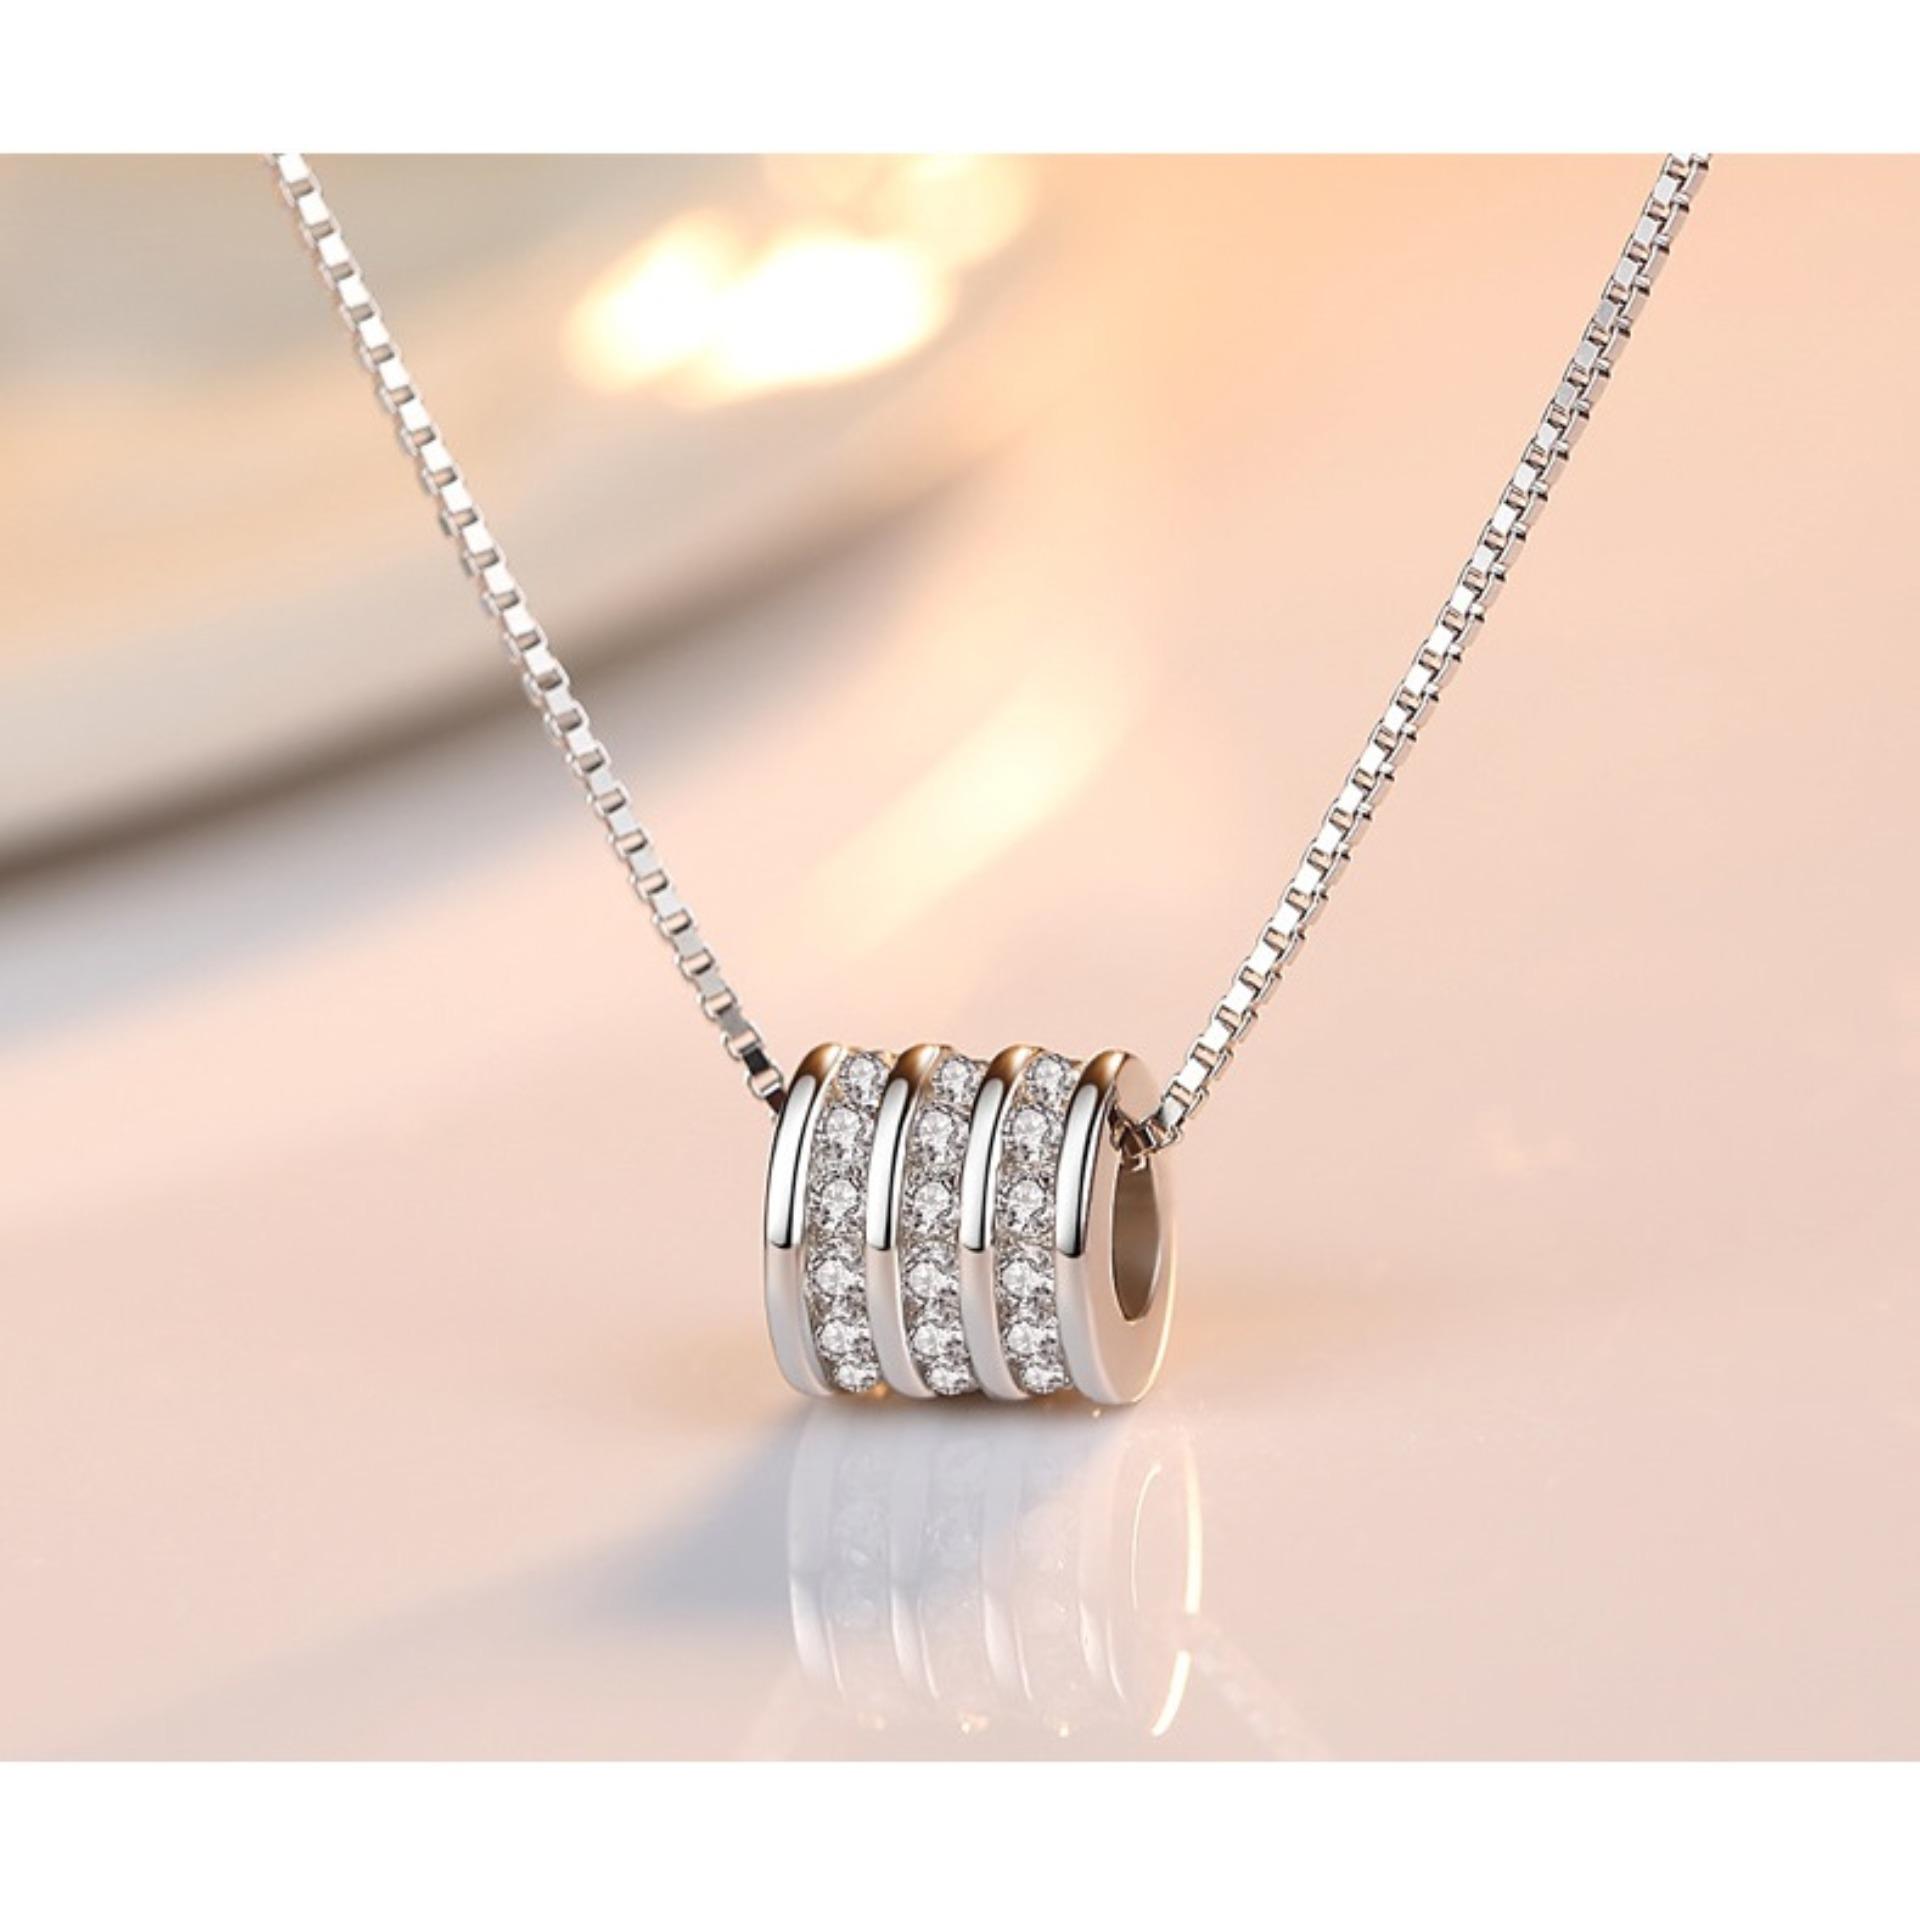 JK Silver - Mặt dây chuyền bạc Ý 925 J051803 - phong cách Hàn Quốc nổi bật sang trọng